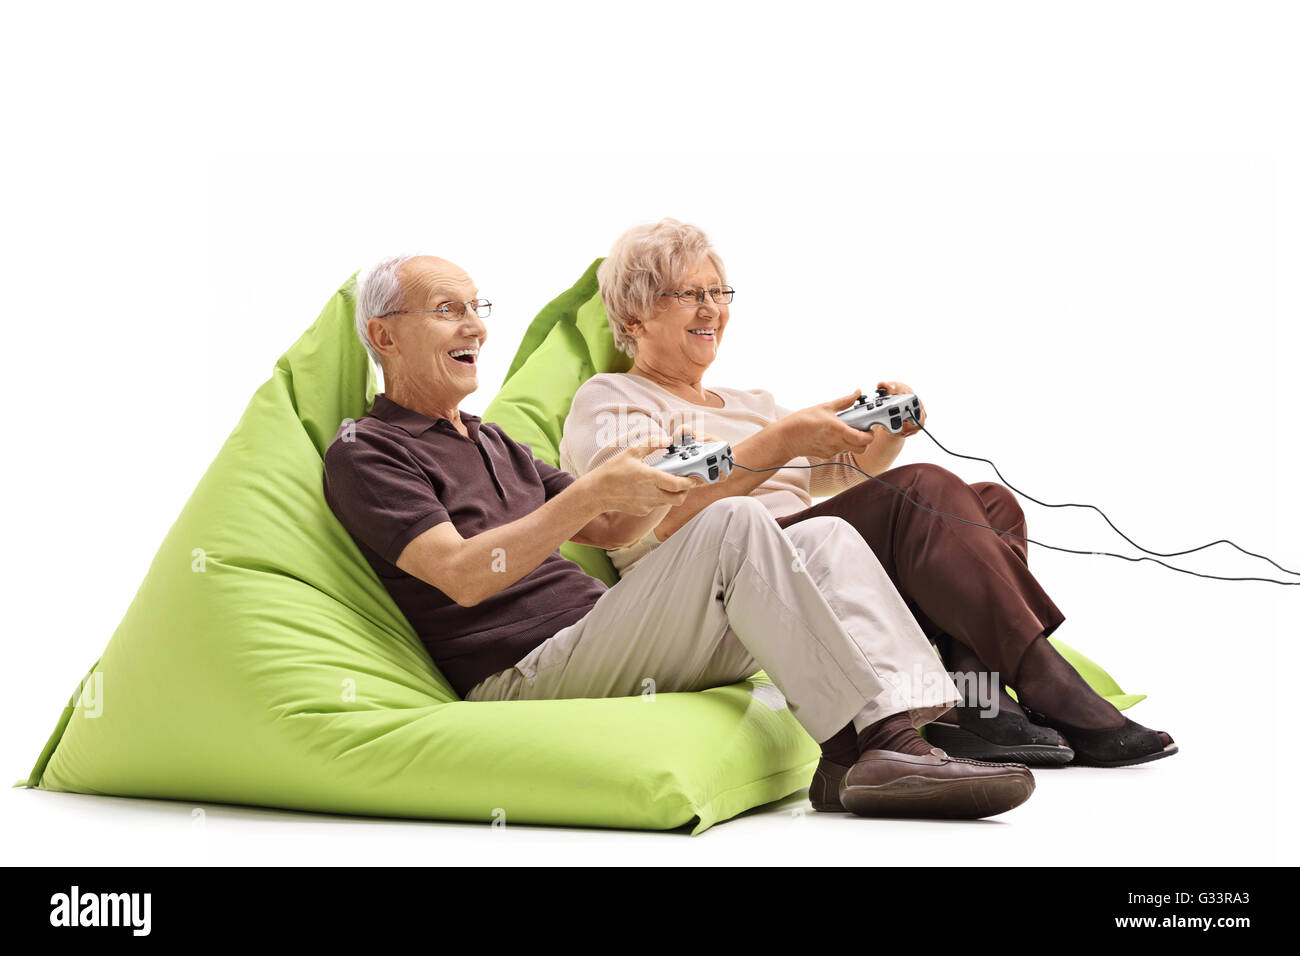 Coppia di anziani la riproduzione di video giochi seduto sul verde beanbags isolati su sfondo bianco Foto Stock